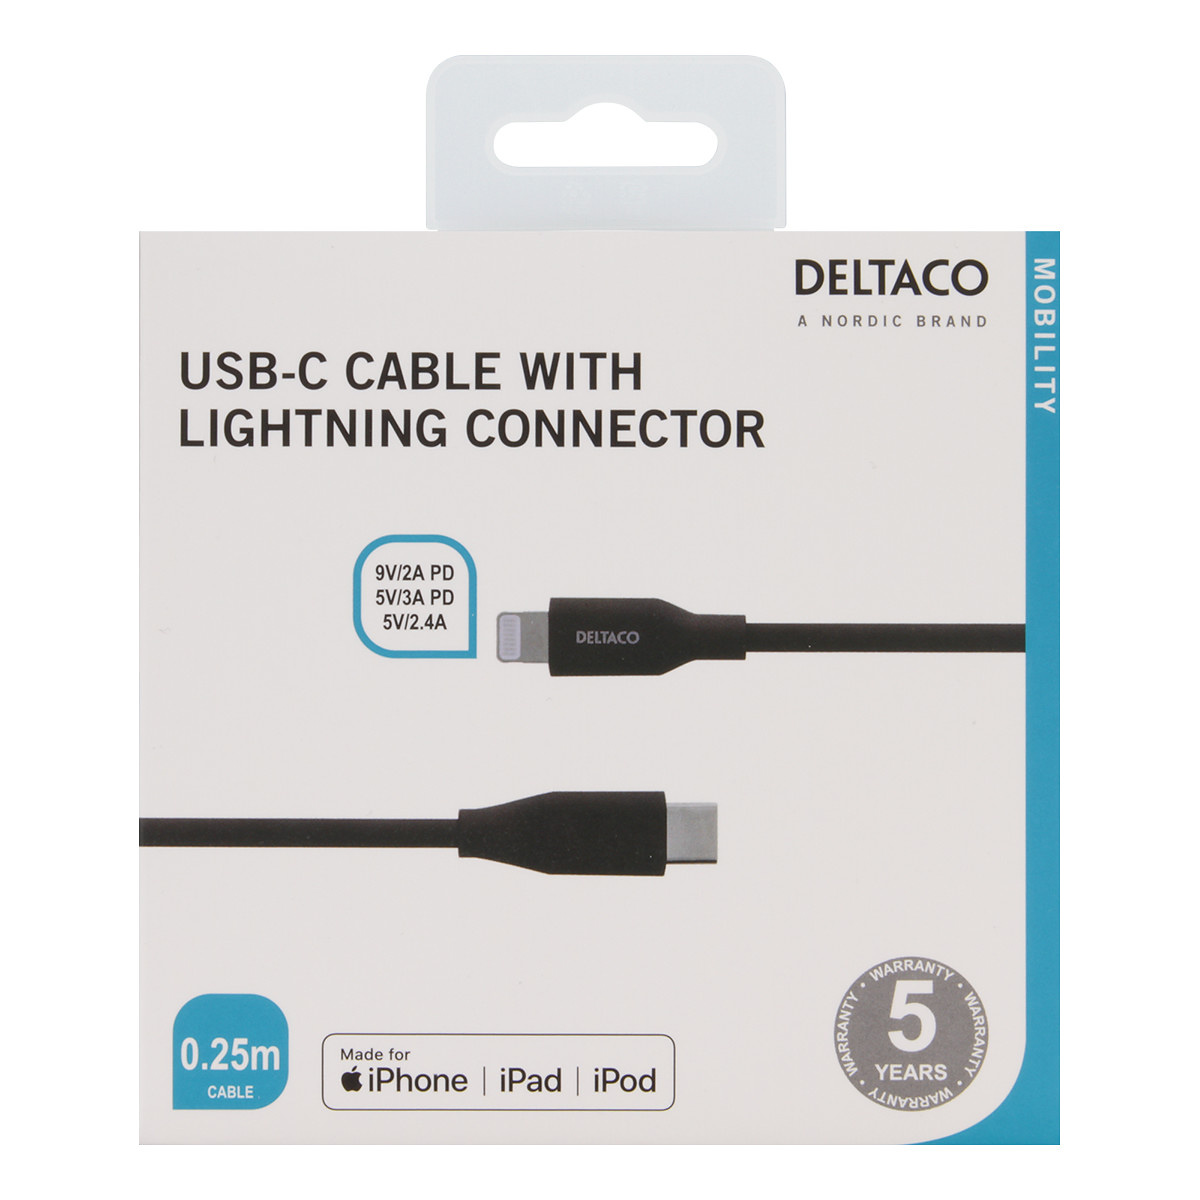 Deltaco USB-C till Lightning kabel, 0.25m, 5V/3A PD, svart